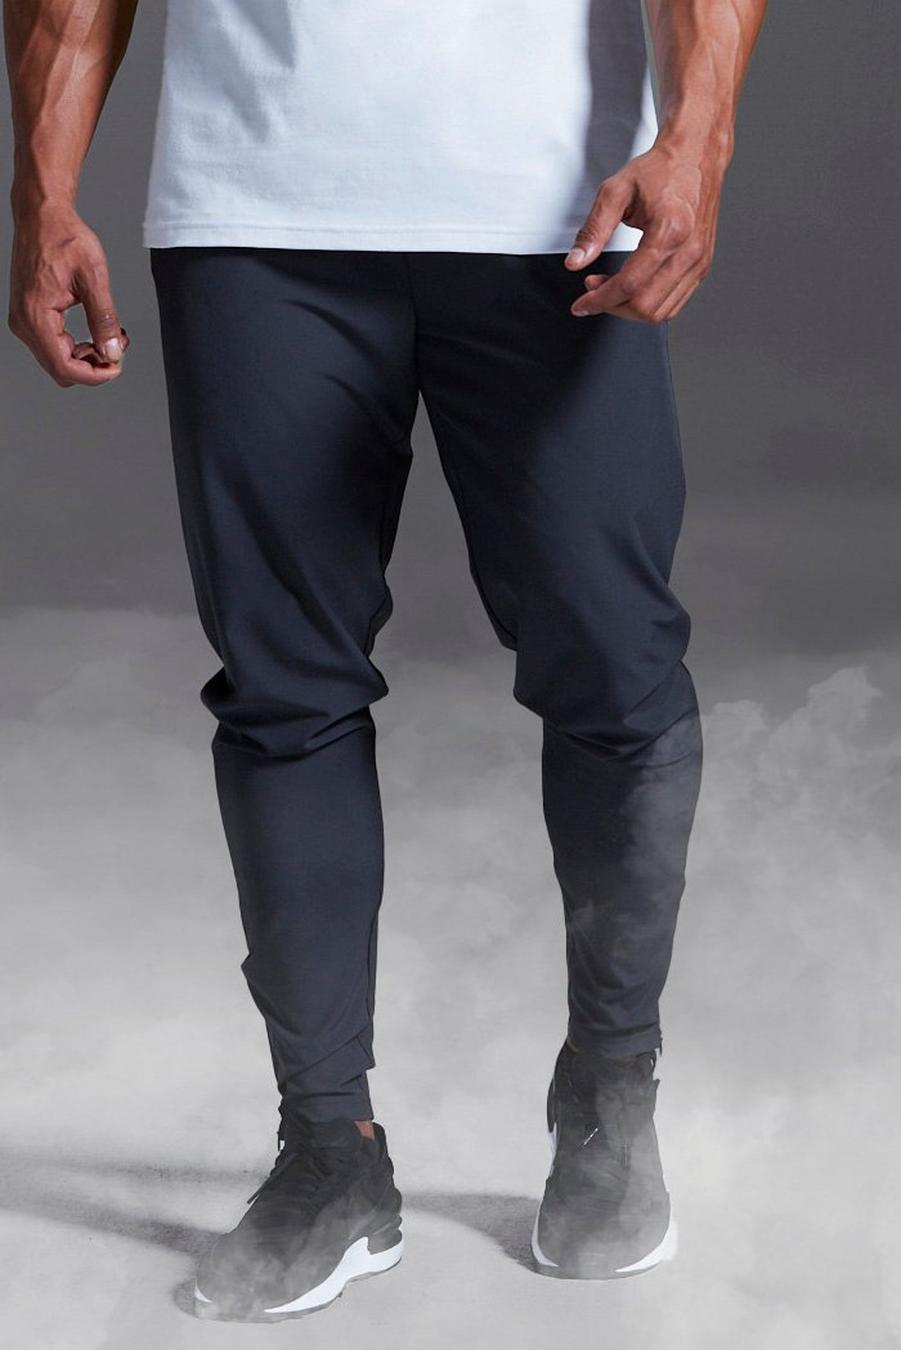 Pantalón deportivo MAN Active x Andrei elástico para el gimnasio, Charcoal grigio